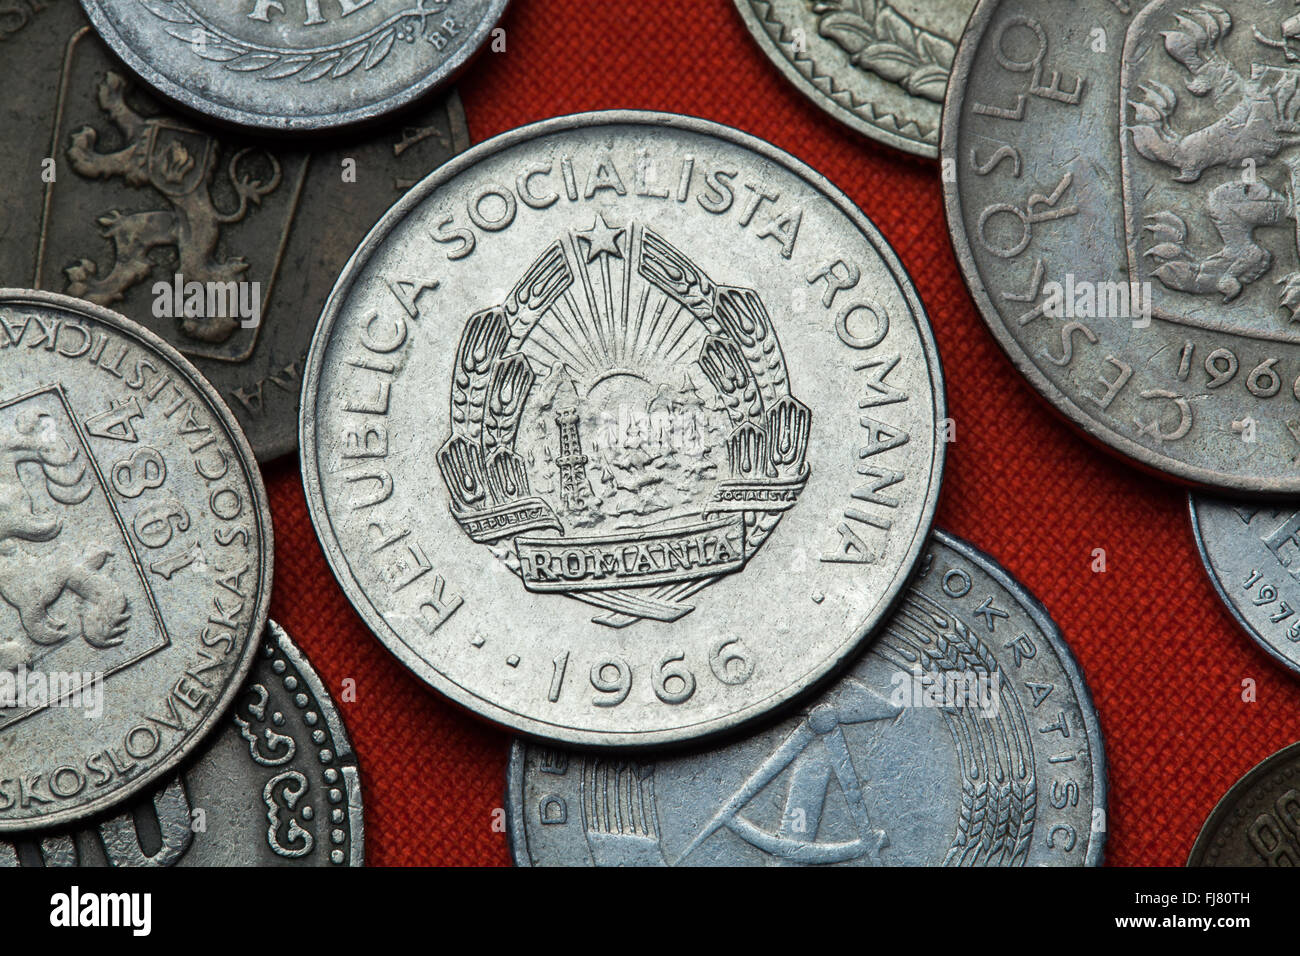 Münzen des kommunistischen Rumänien. Wappen der Sozialistischen Republik Rumänien in der rumänischen Leu eine Münze abgebildet (1966). Stockfoto